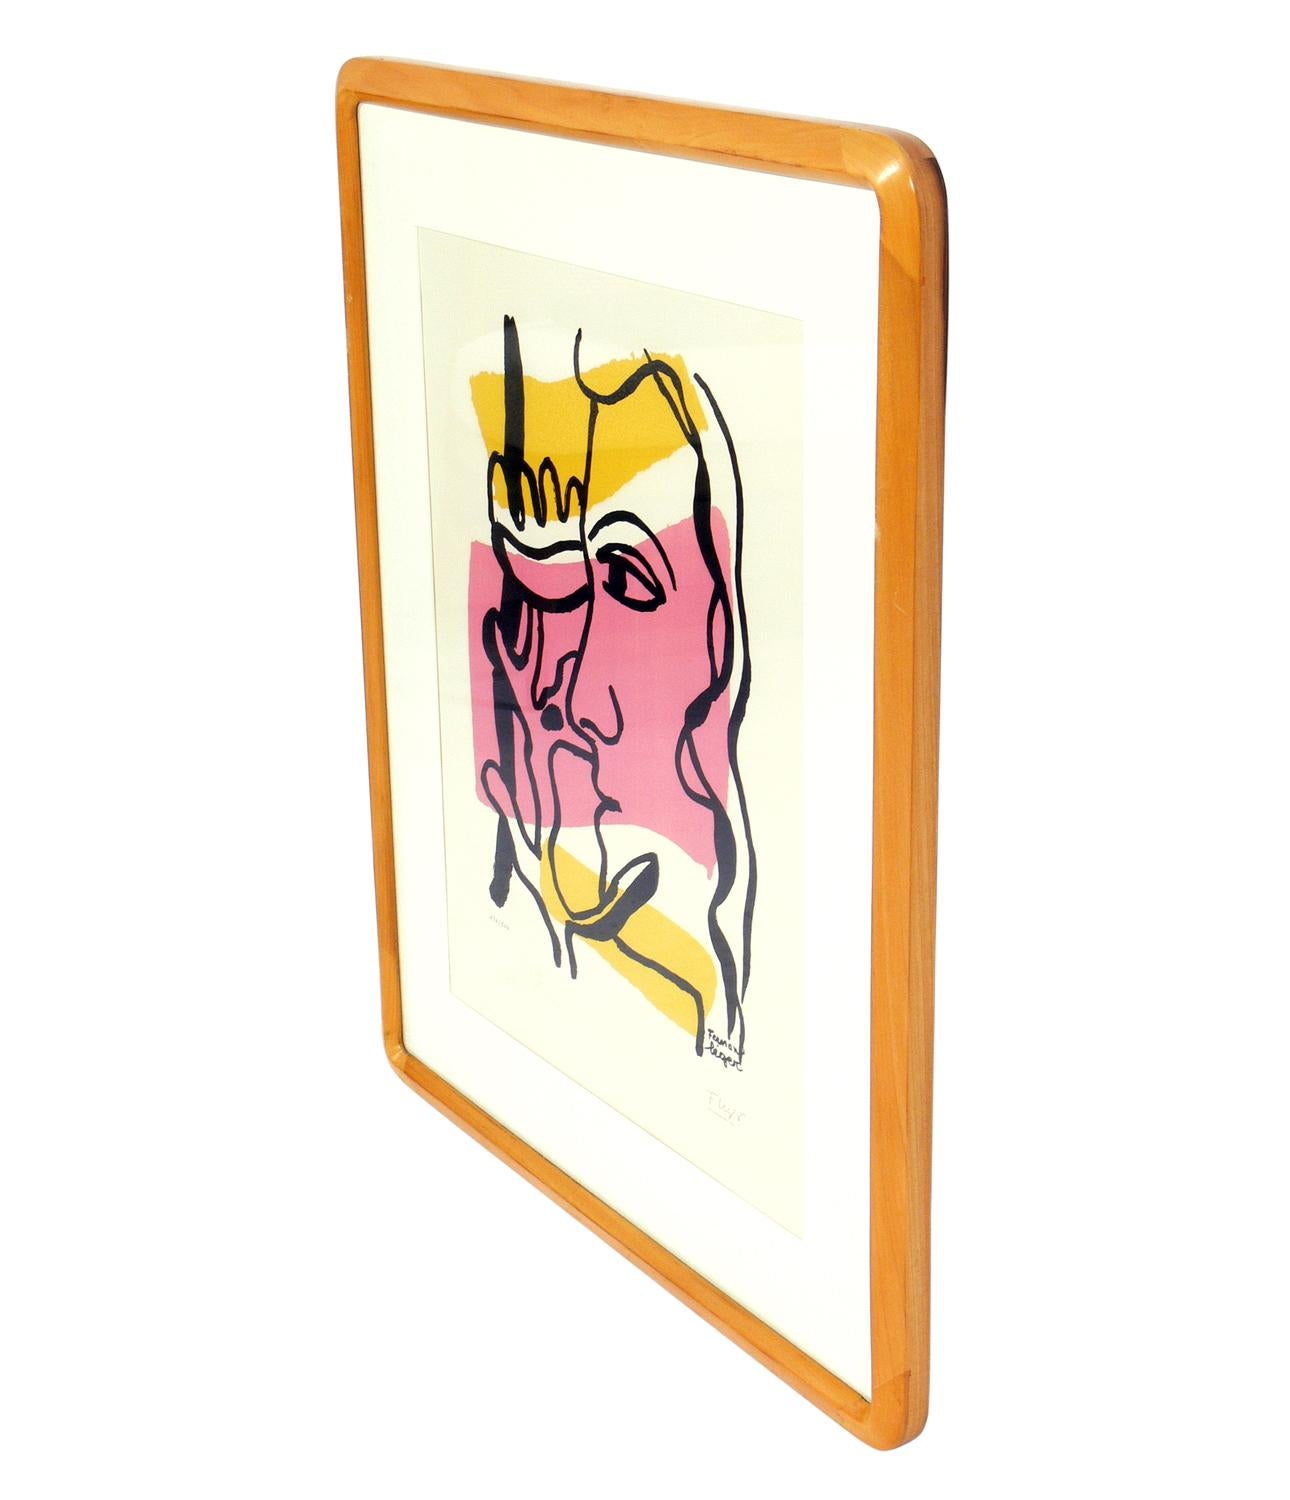 Pochoir abstrait en couleur d'après Fernand Léger, signé et numéroté 120 de l'édition limitée à 500 exemplaires publiée par le Musée Fernand Léger, Biot, France. La taille indiquée ci-dessous est celle du cadre.